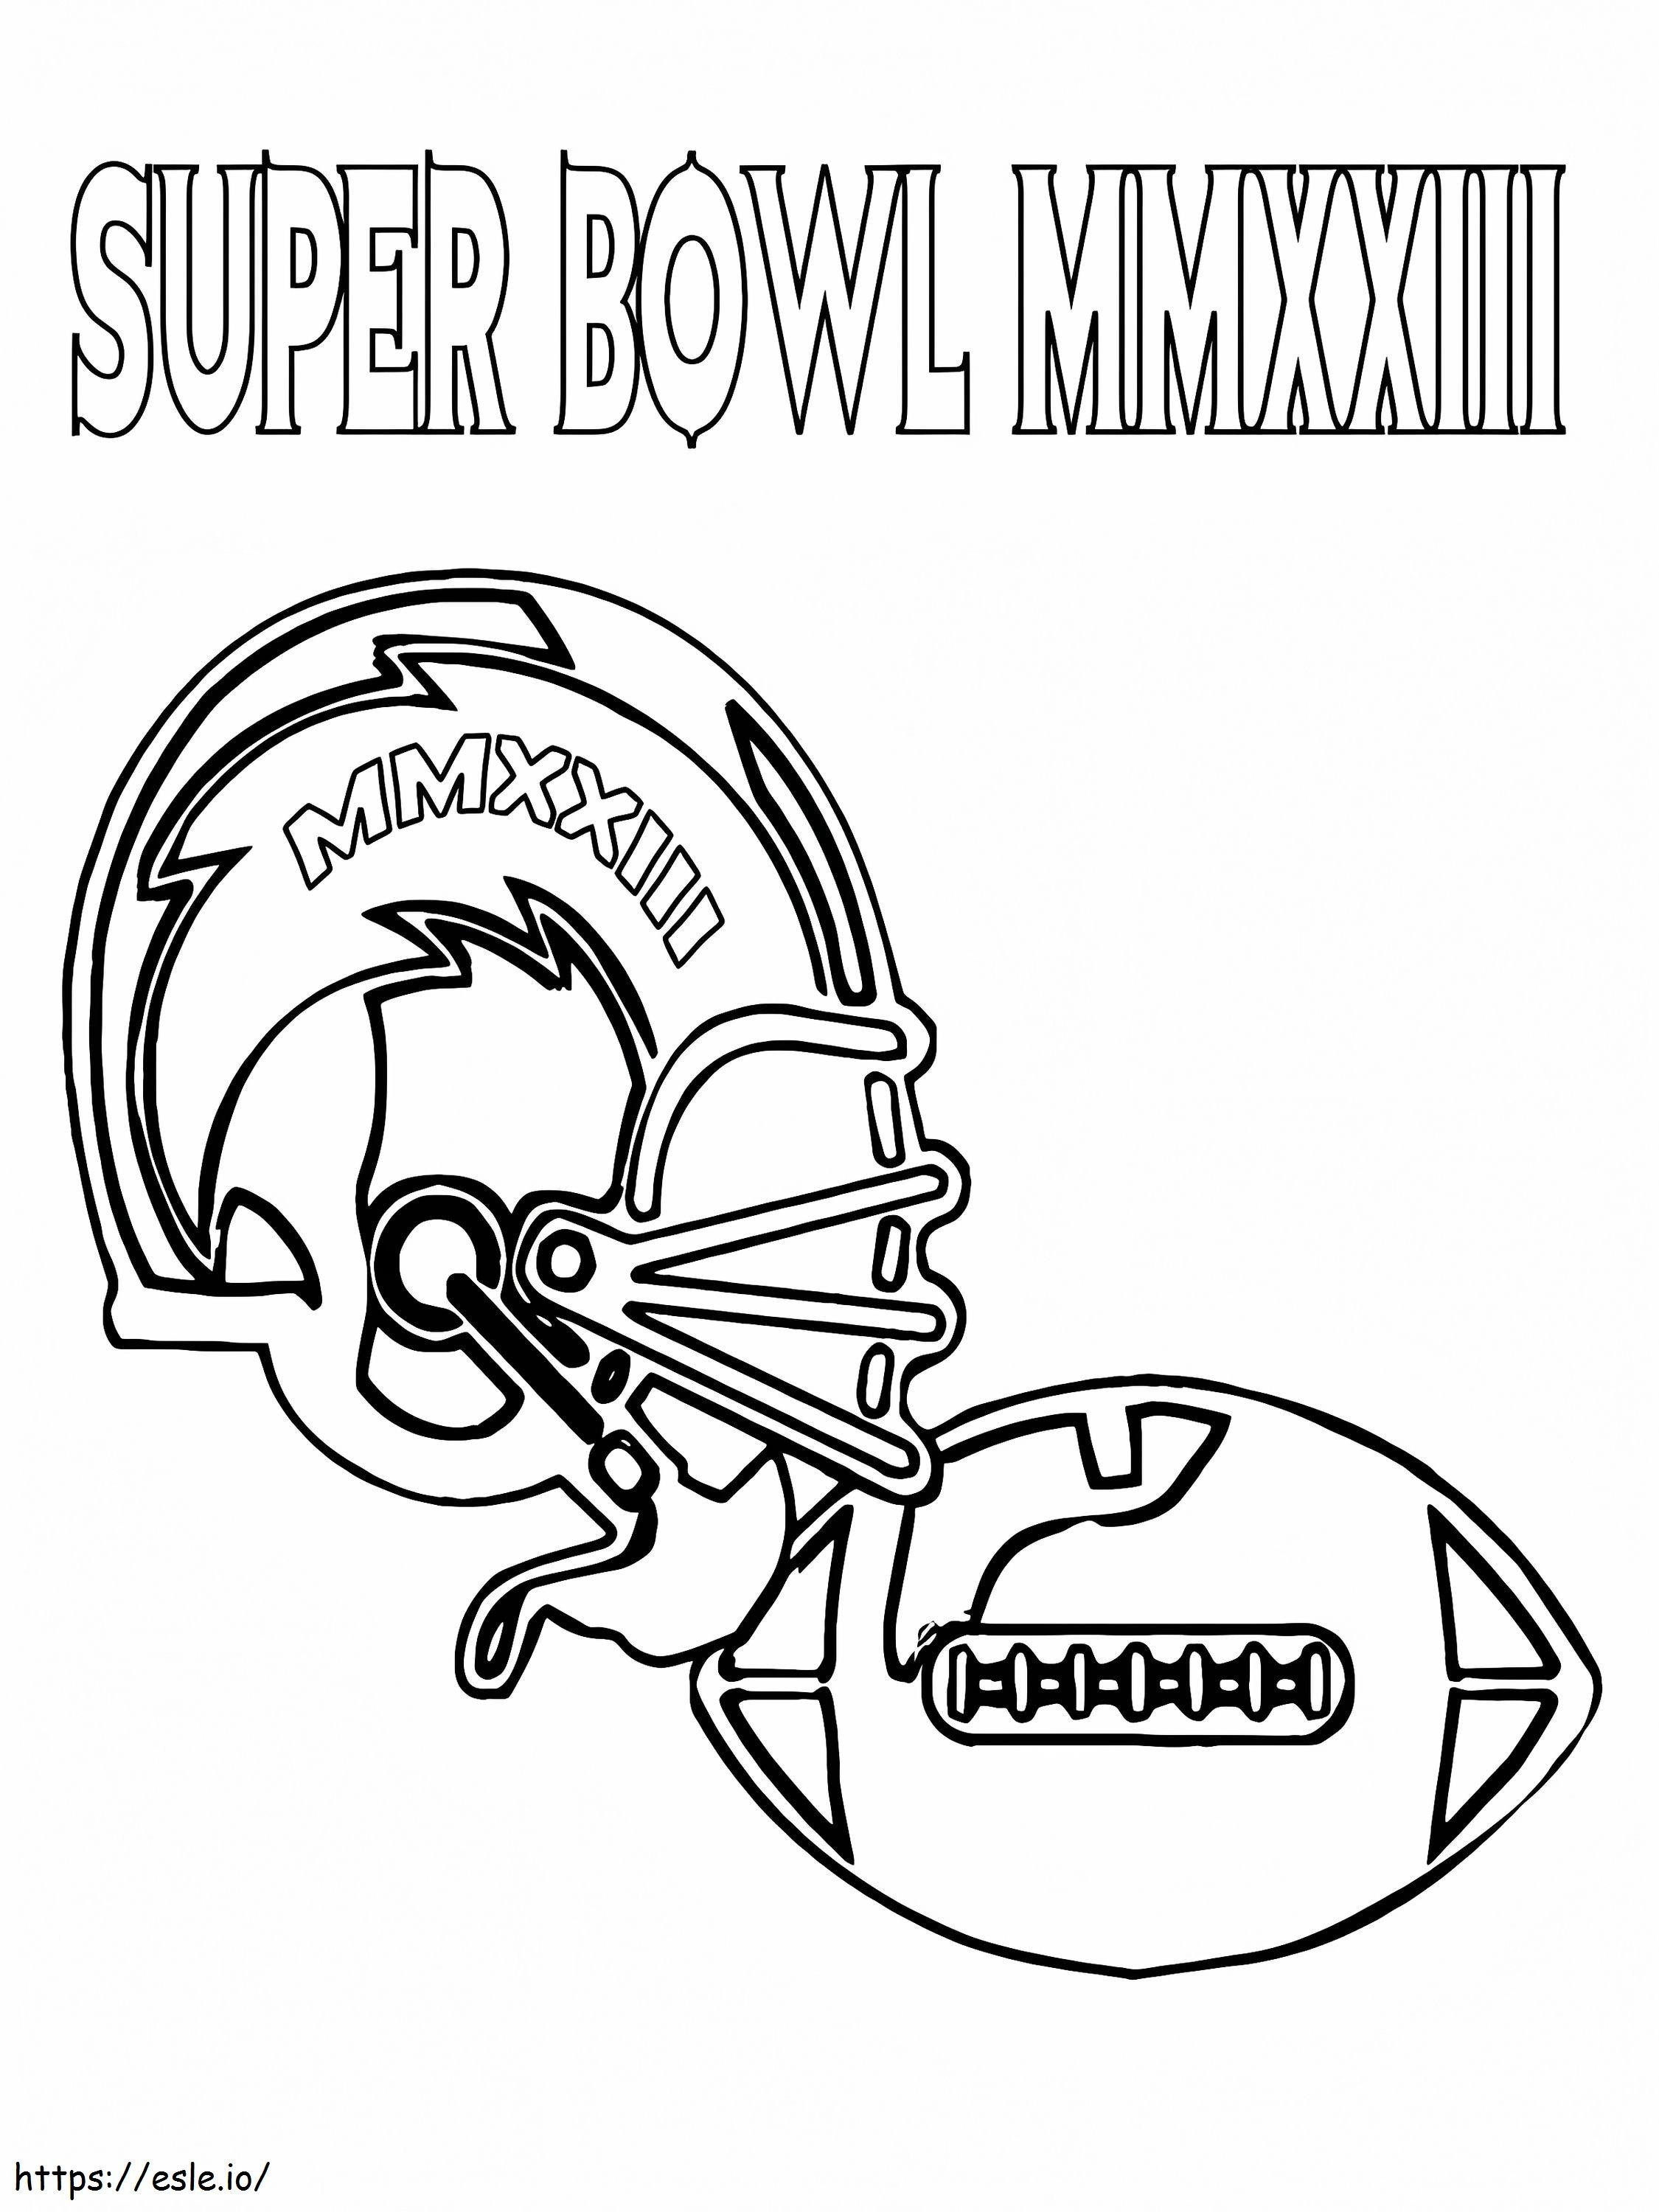 Helm dan Bola Sepak Bola Super Bowl Gambar Mewarnai